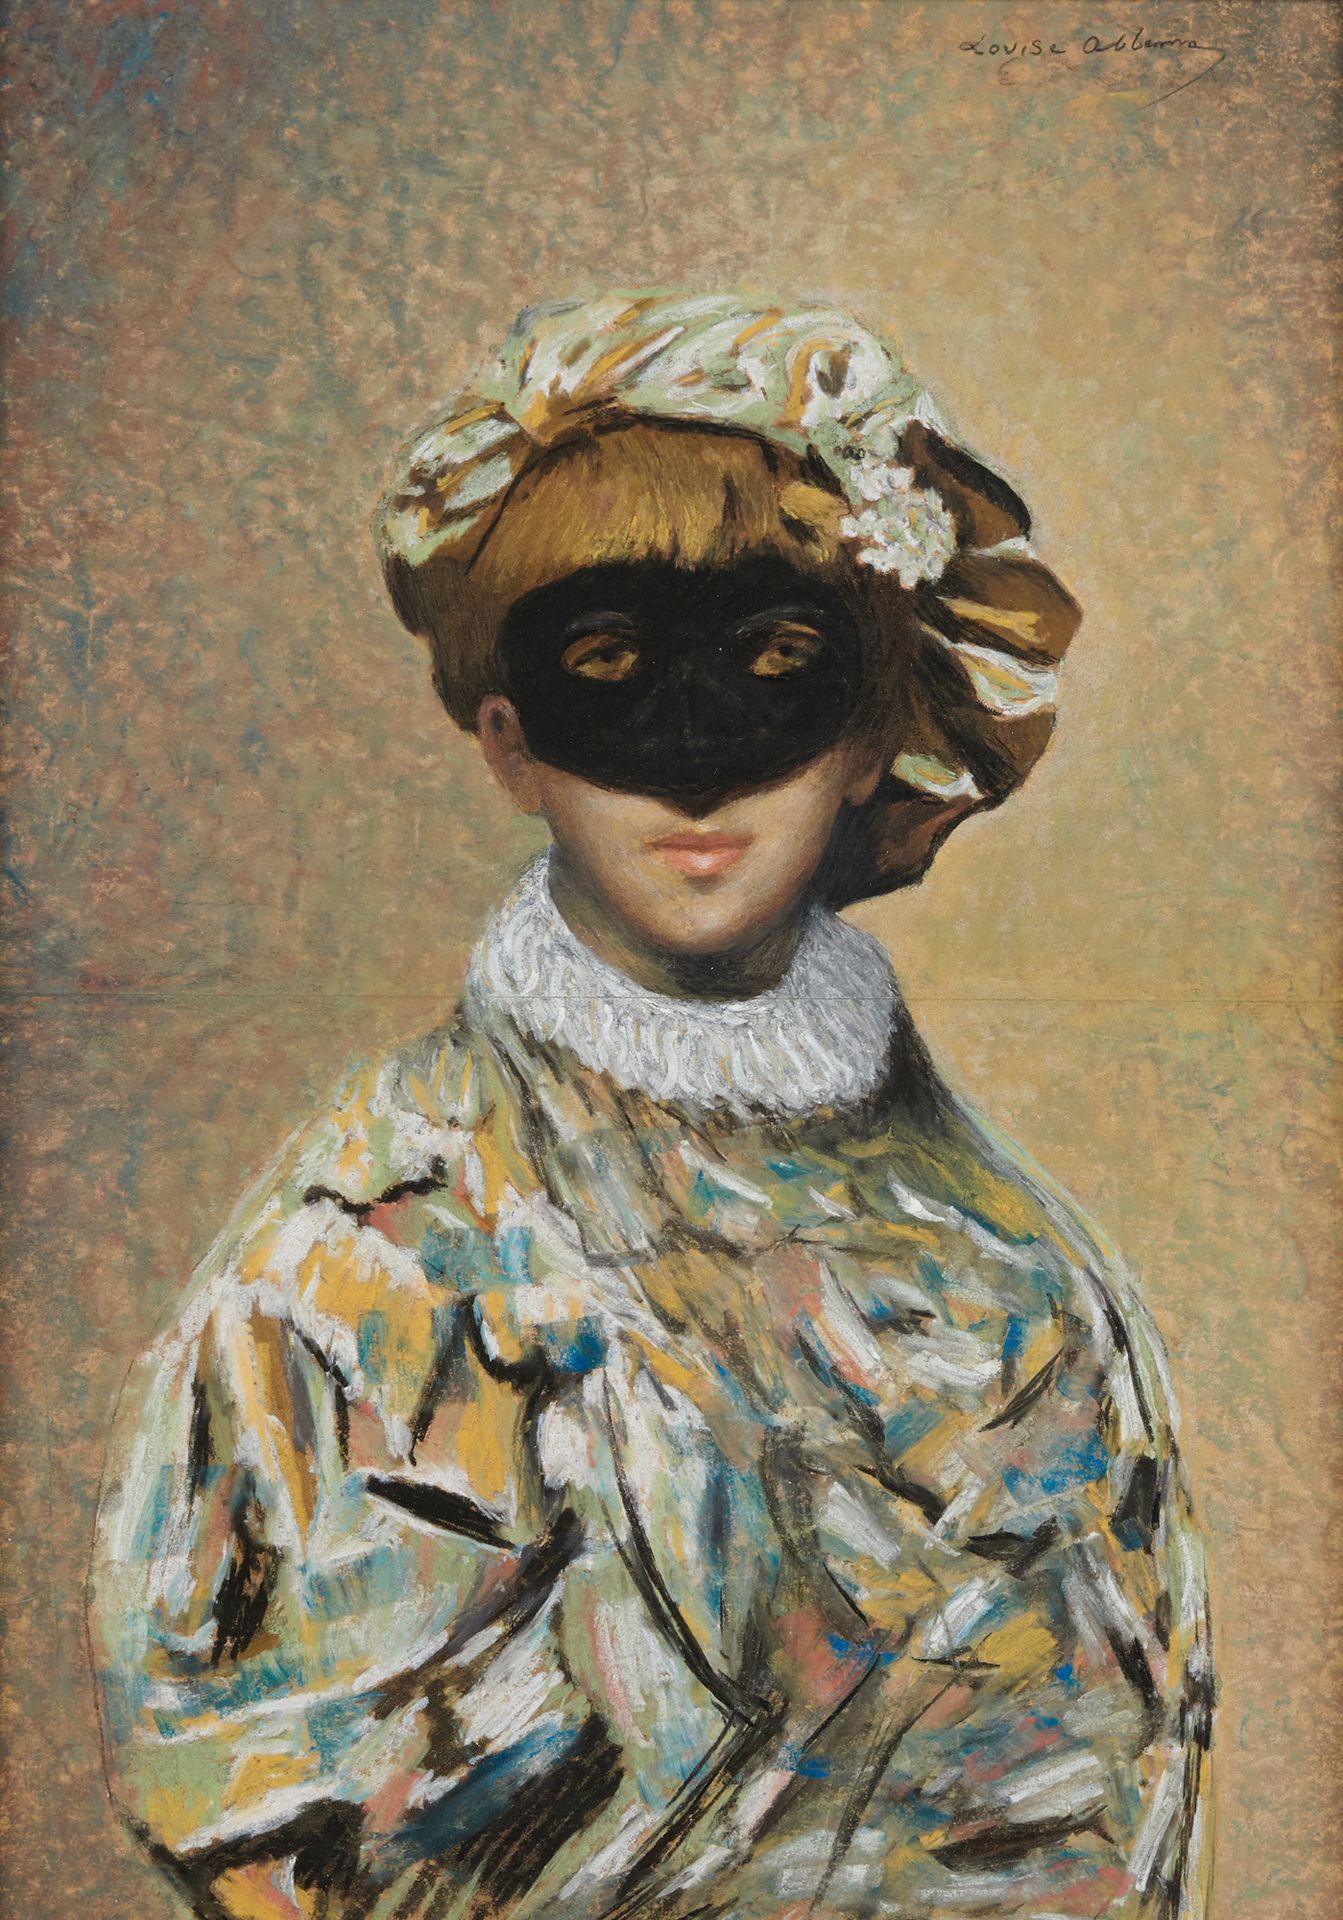 Louise ABBÉMA 1858-1927 萨拉-伯恩哈特的假定肖像 

纸上粉彩画，右上方有签名
46 x 33 厘米
(中间折叠）